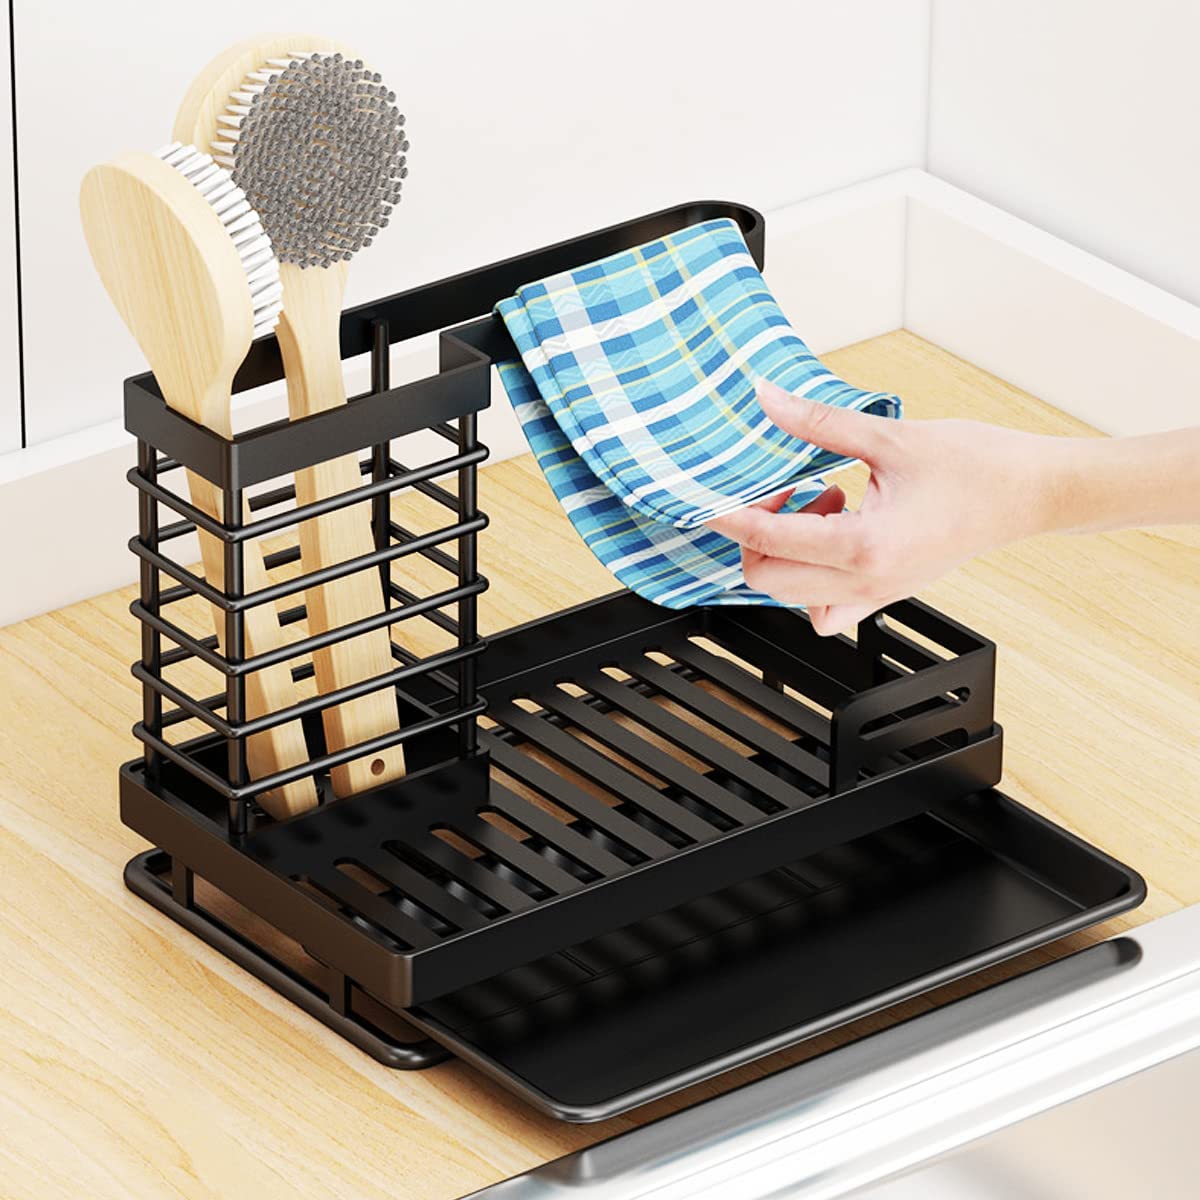 dish brush holder in sink sponge holder Suction Sponge Holder Dish